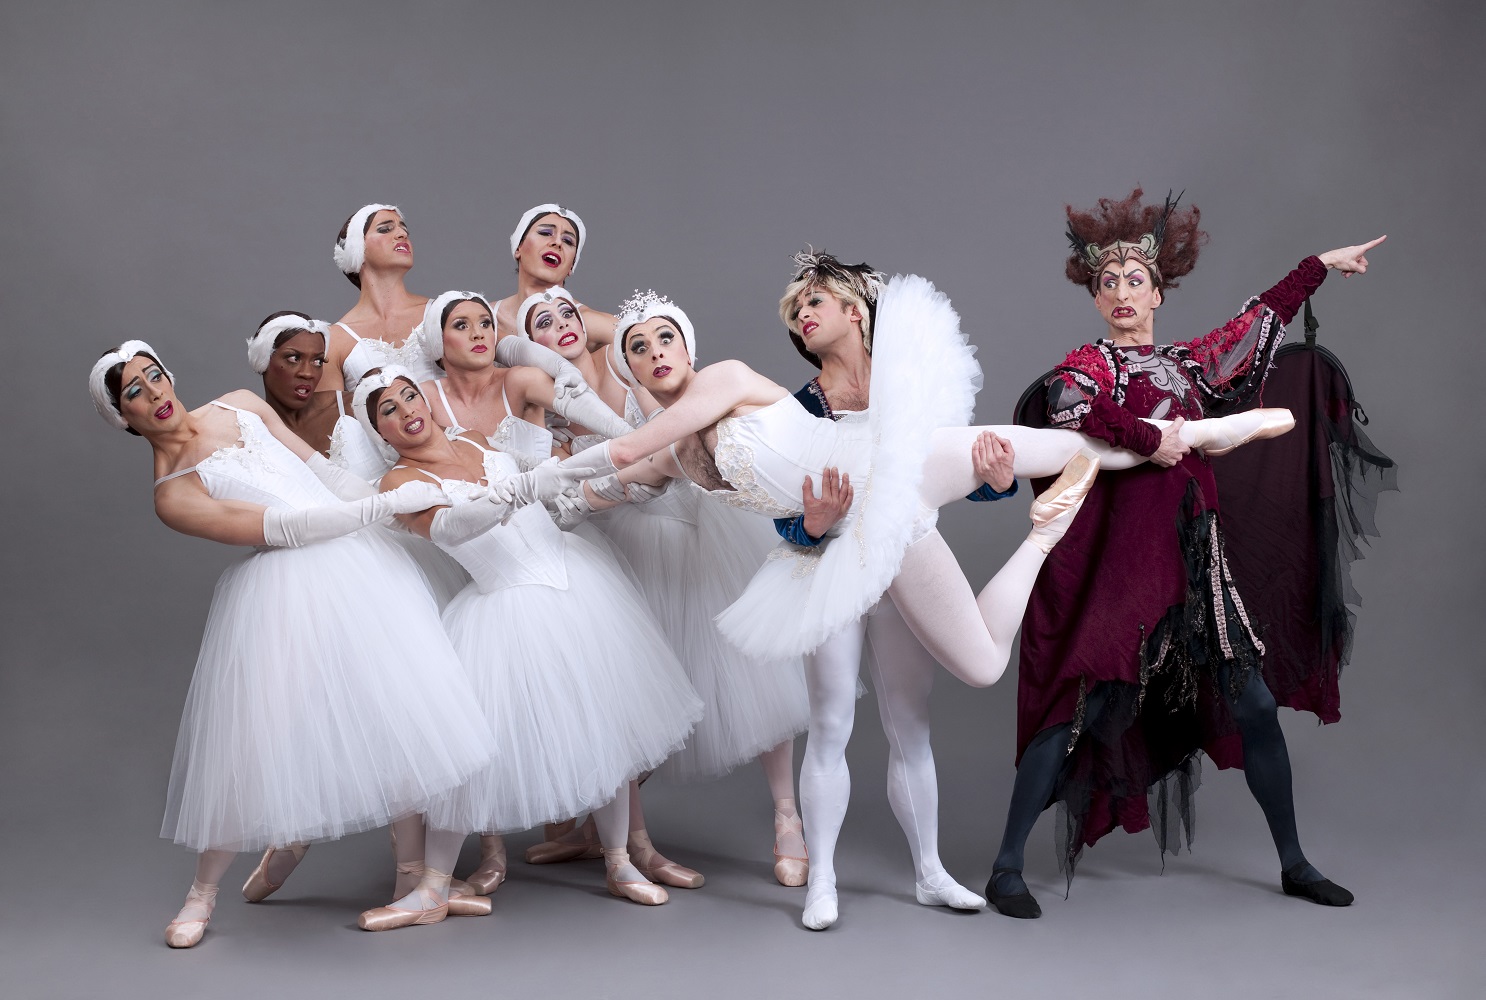 Les Ballets Trockadero de Monte Carlo in "Swan Lake" - Photo by Zoran Jelenic